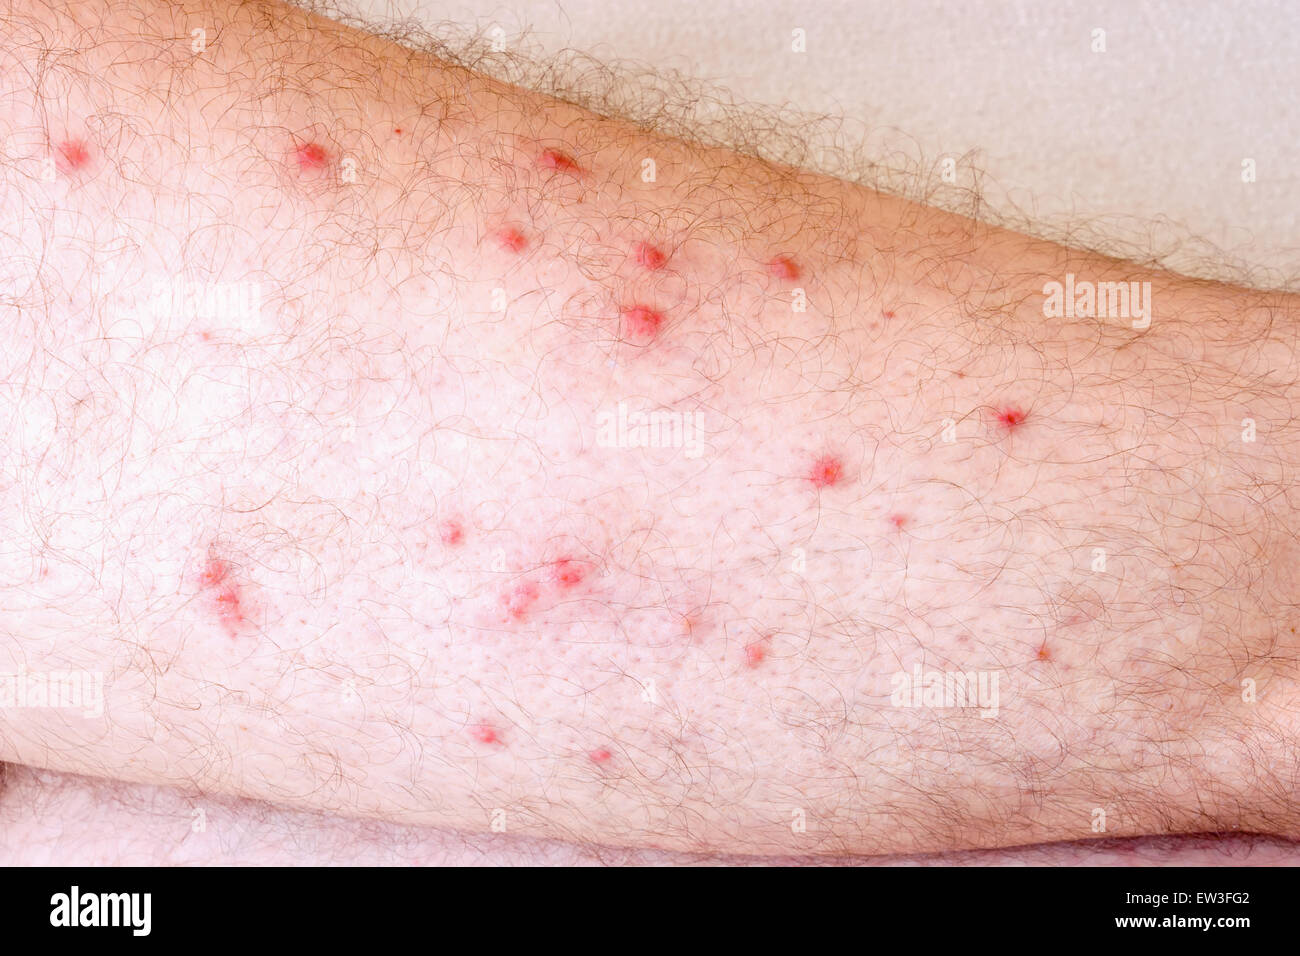 Allergy on legs Stock Photo